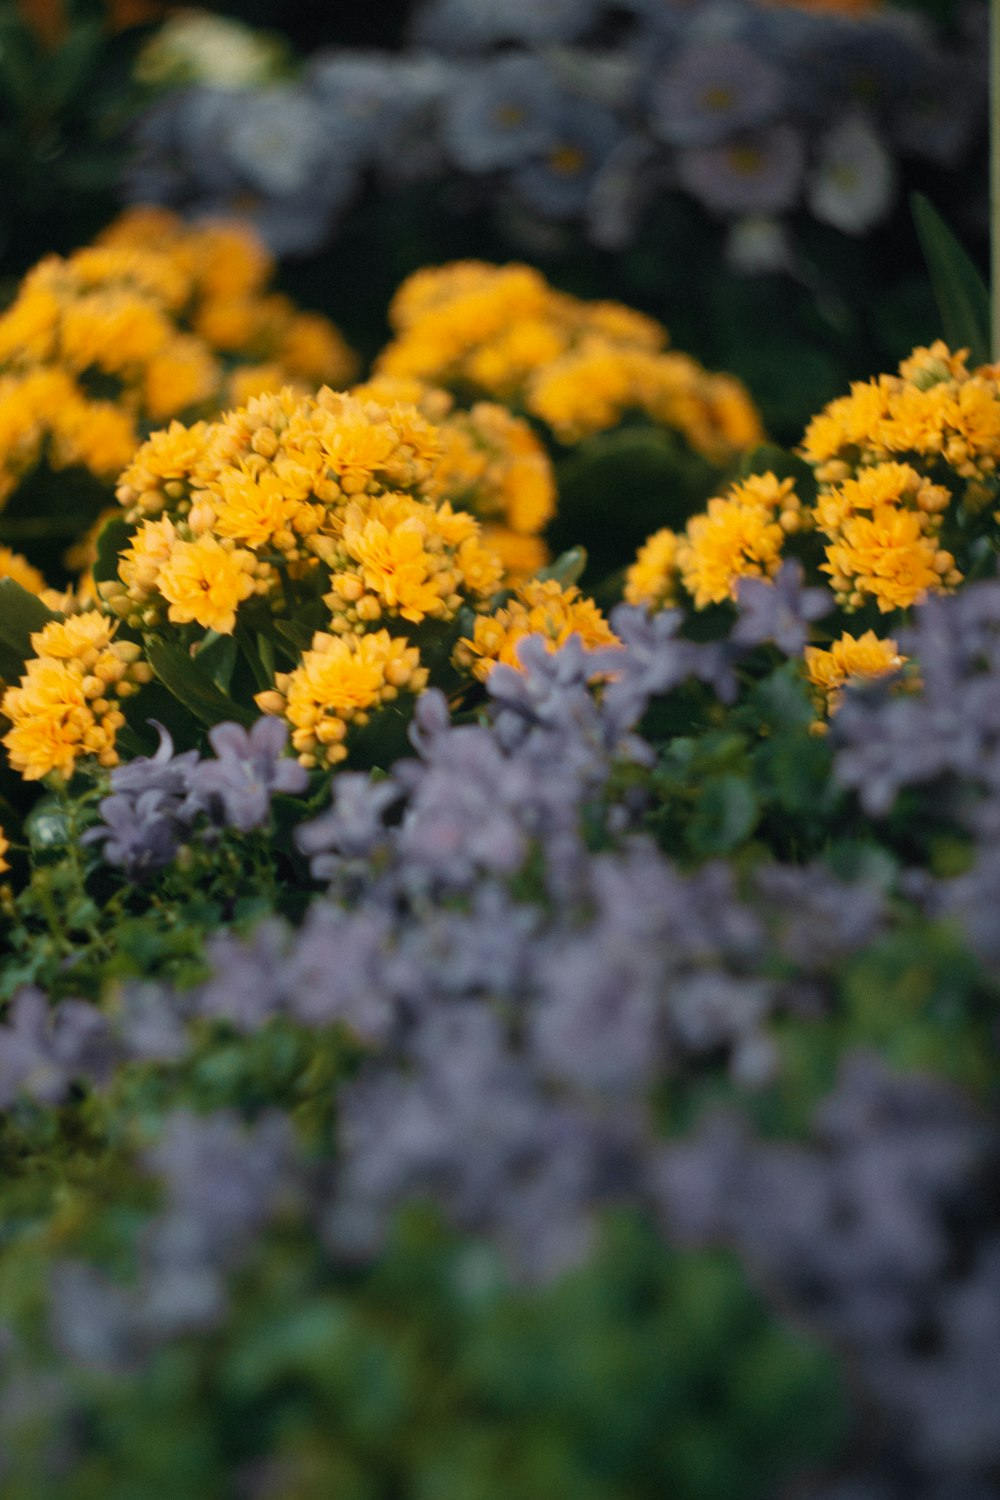 Un bouquet de fleurs jaunes et violettes dans un jardin